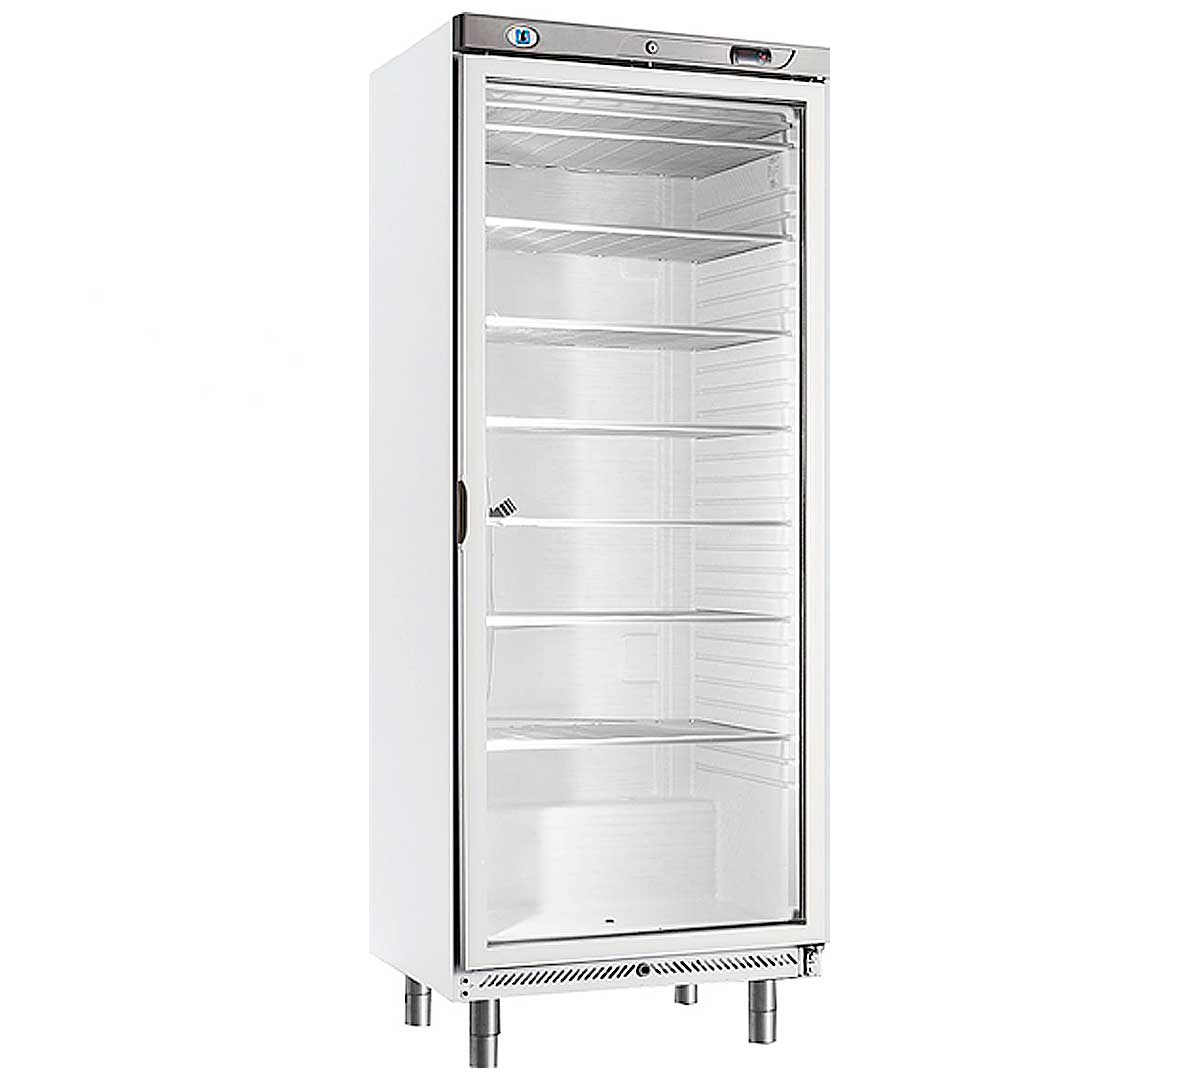 Armarios congelación especiales gastronorm serie 600 con puerta de cristal. Modelo GPN-600-PV